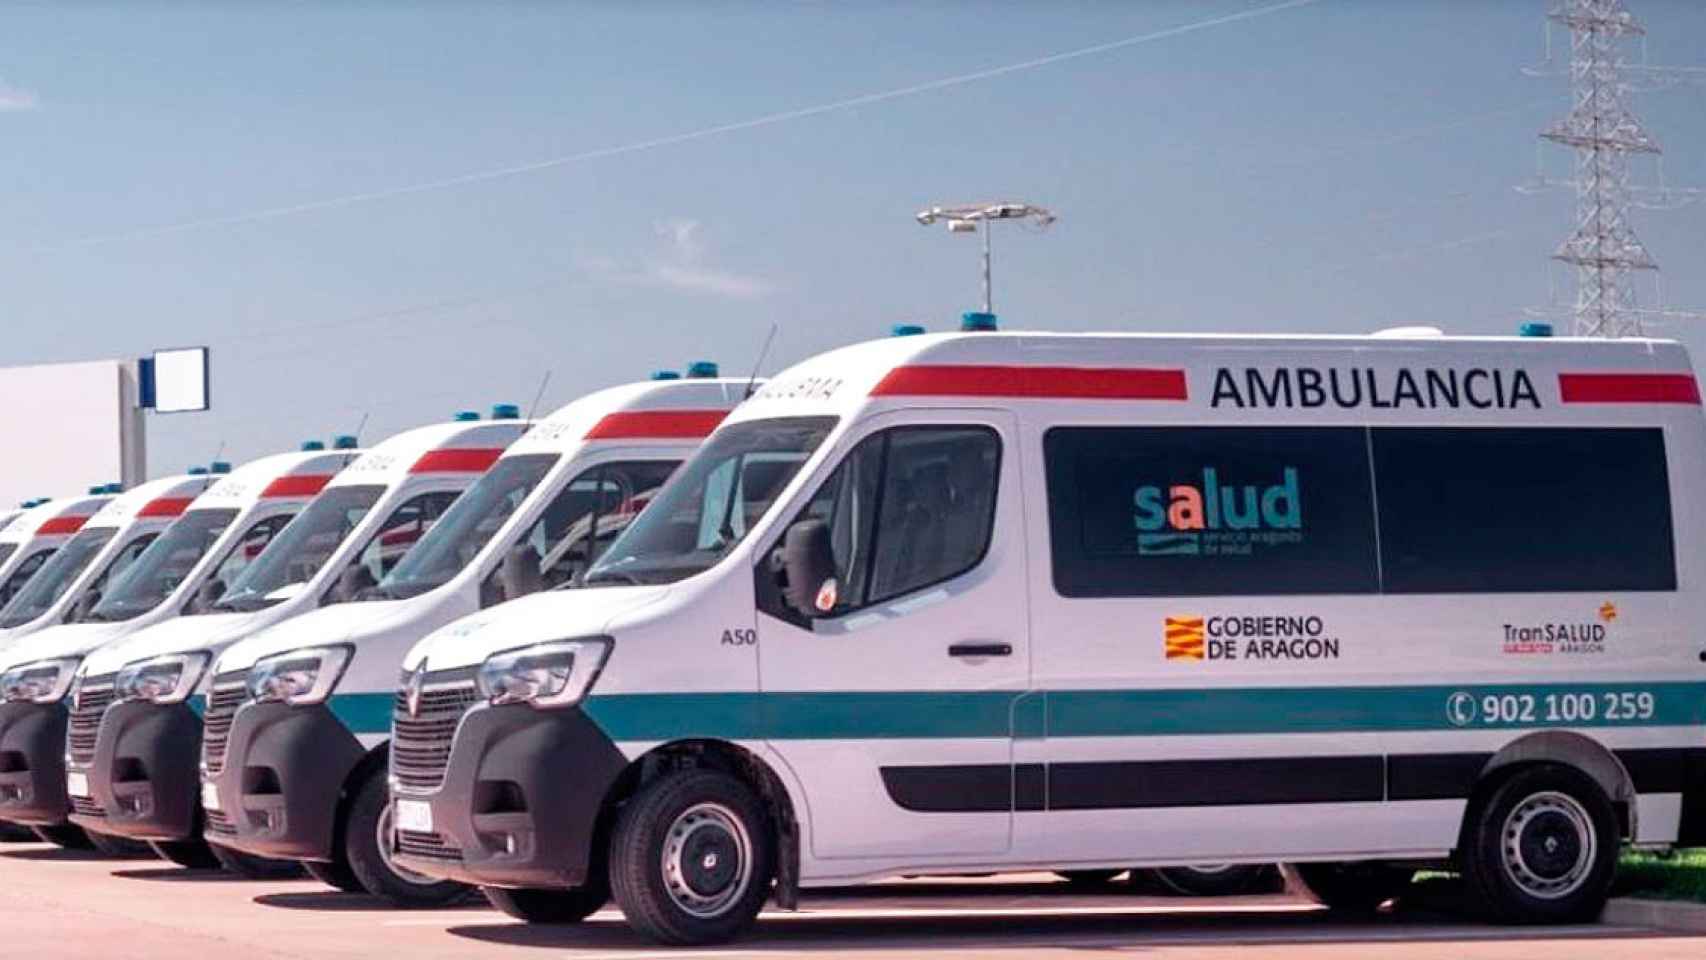 Transalud, la UTE de Ambulancias Egara en Aragón